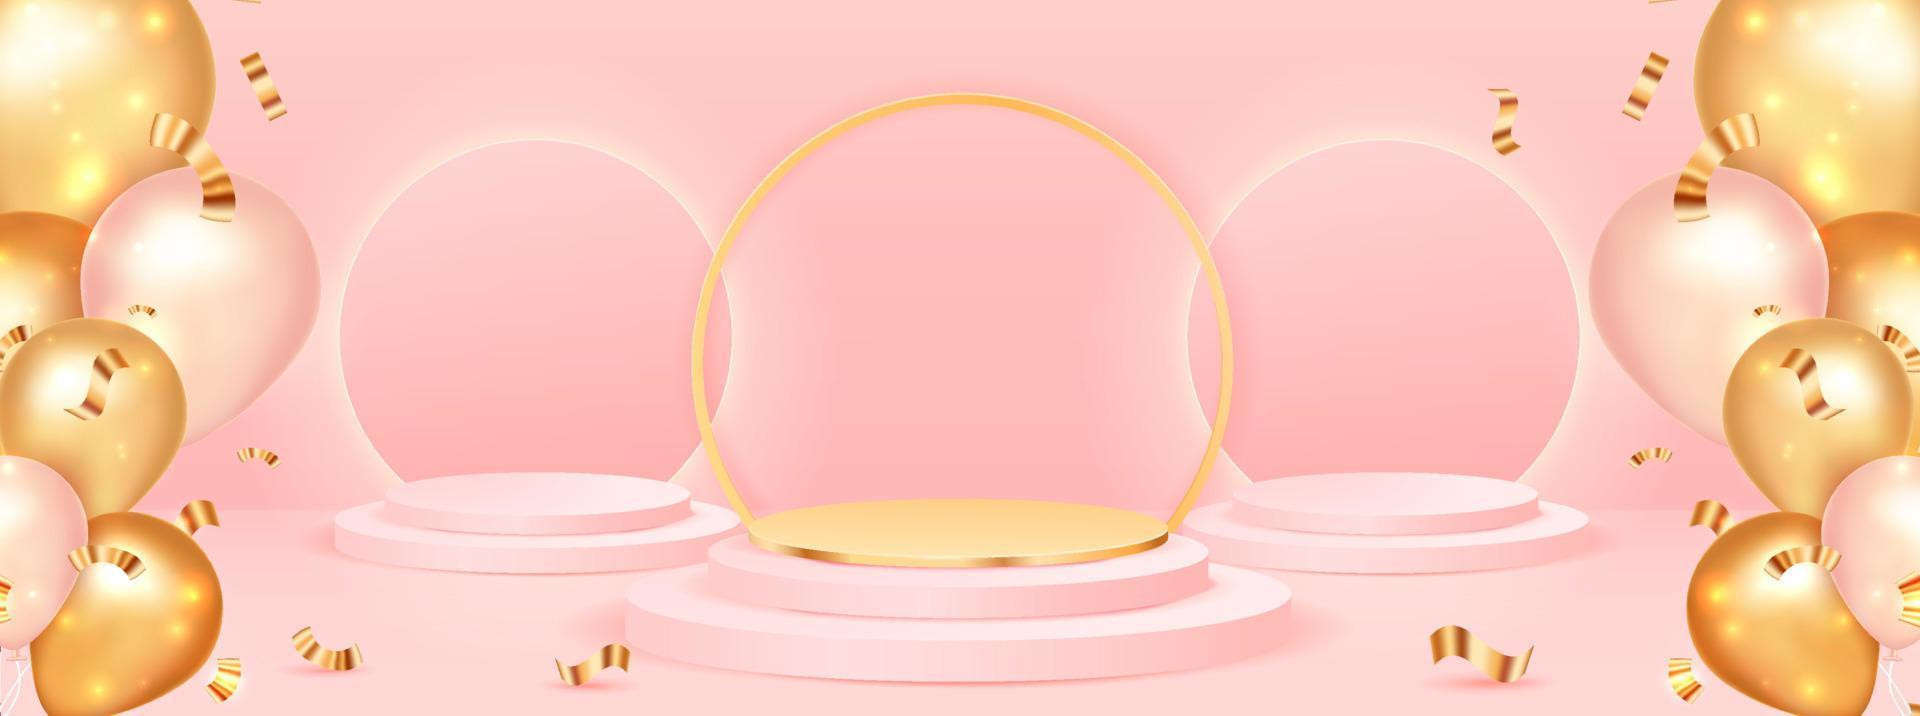 pódio de cena com balões dourados e rosa. apresentação do produto, maquete. pódio, pedestal vencedor ou plataforma. ilustração vetorial vetor